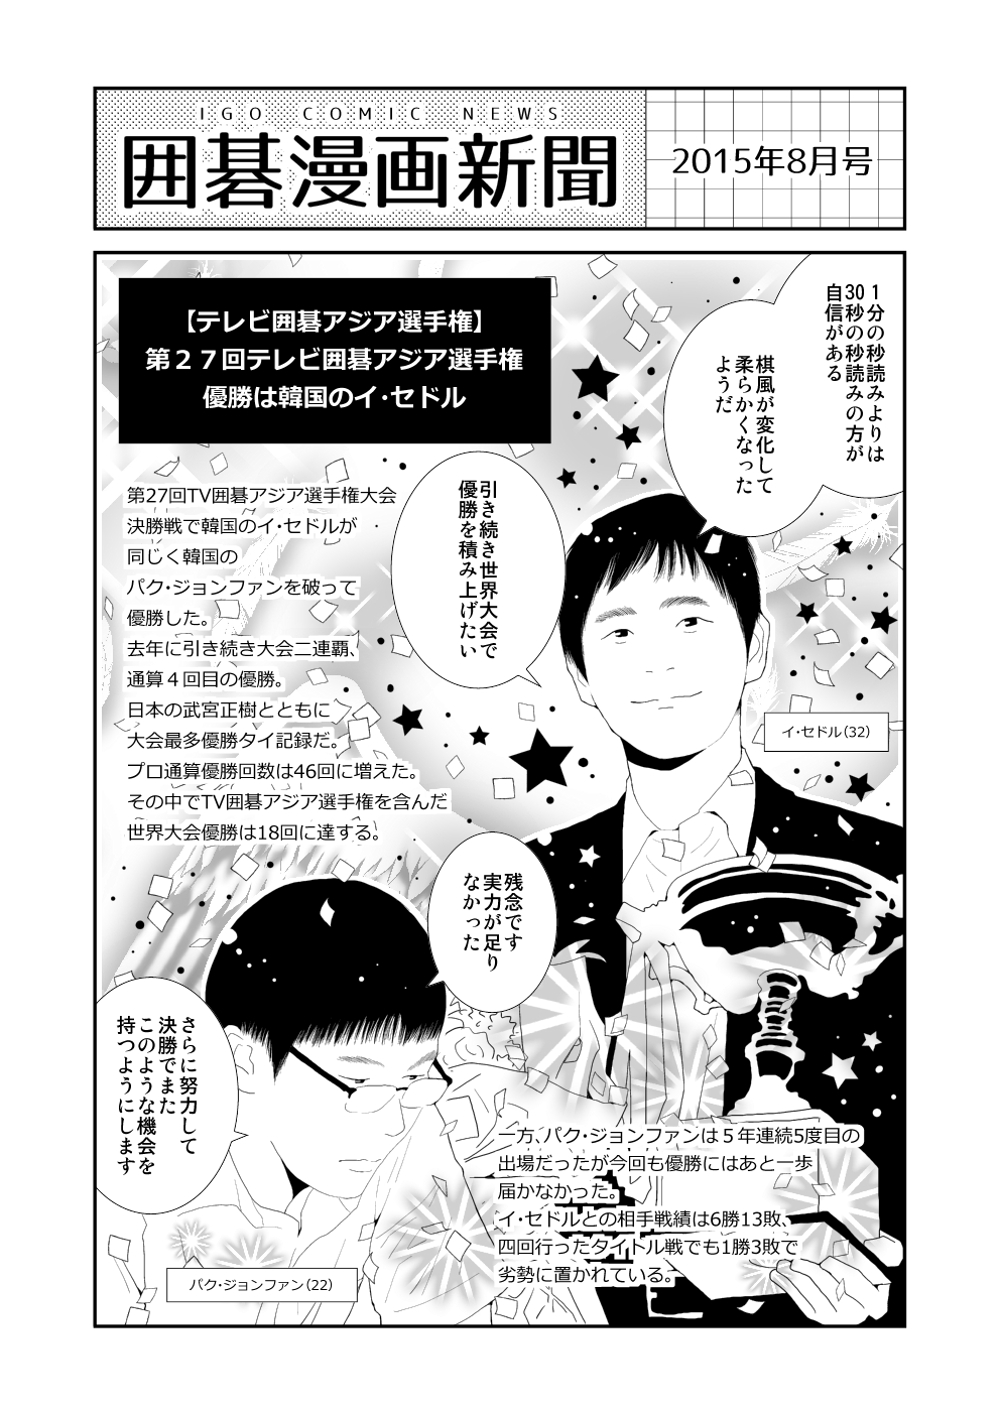 囲碁漫画新聞 ポートフォリオ詳細 Nitro15 デザイナー クラウドソーシング ランサーズ